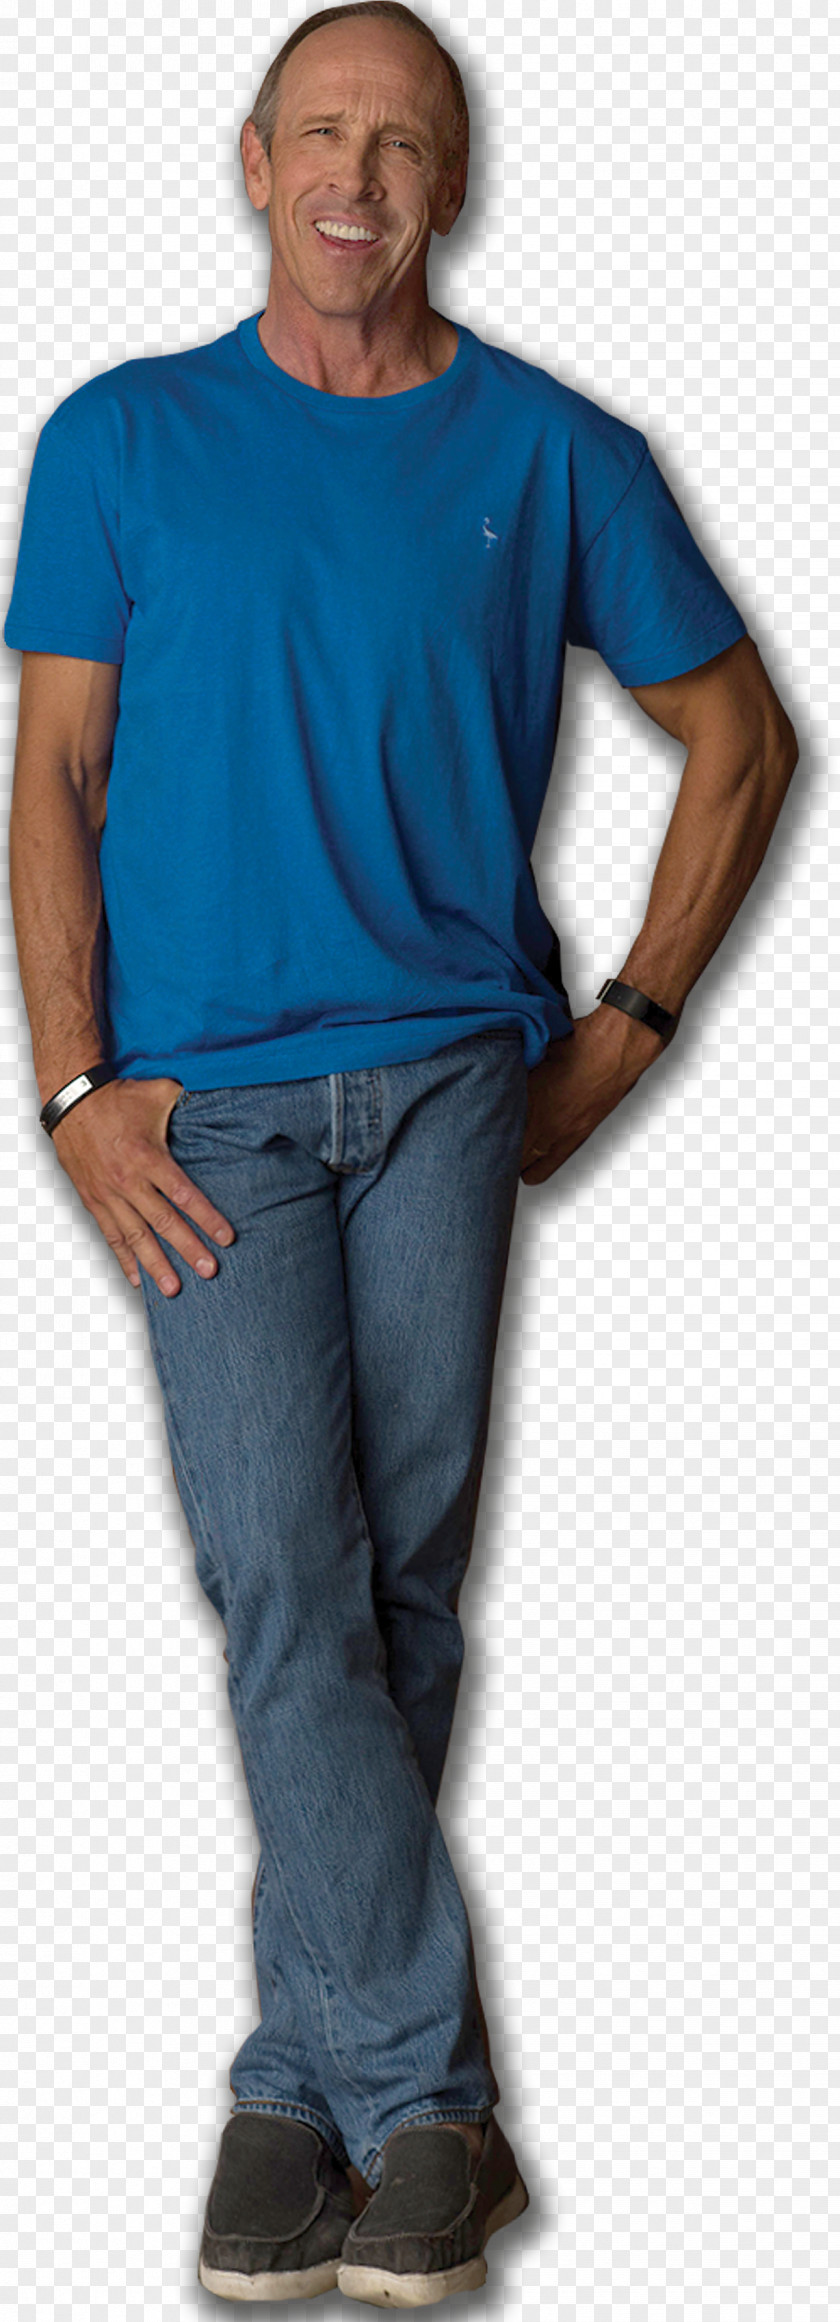 Allen Jeff T-shirt Shoulder Comedian Sleeve PNG